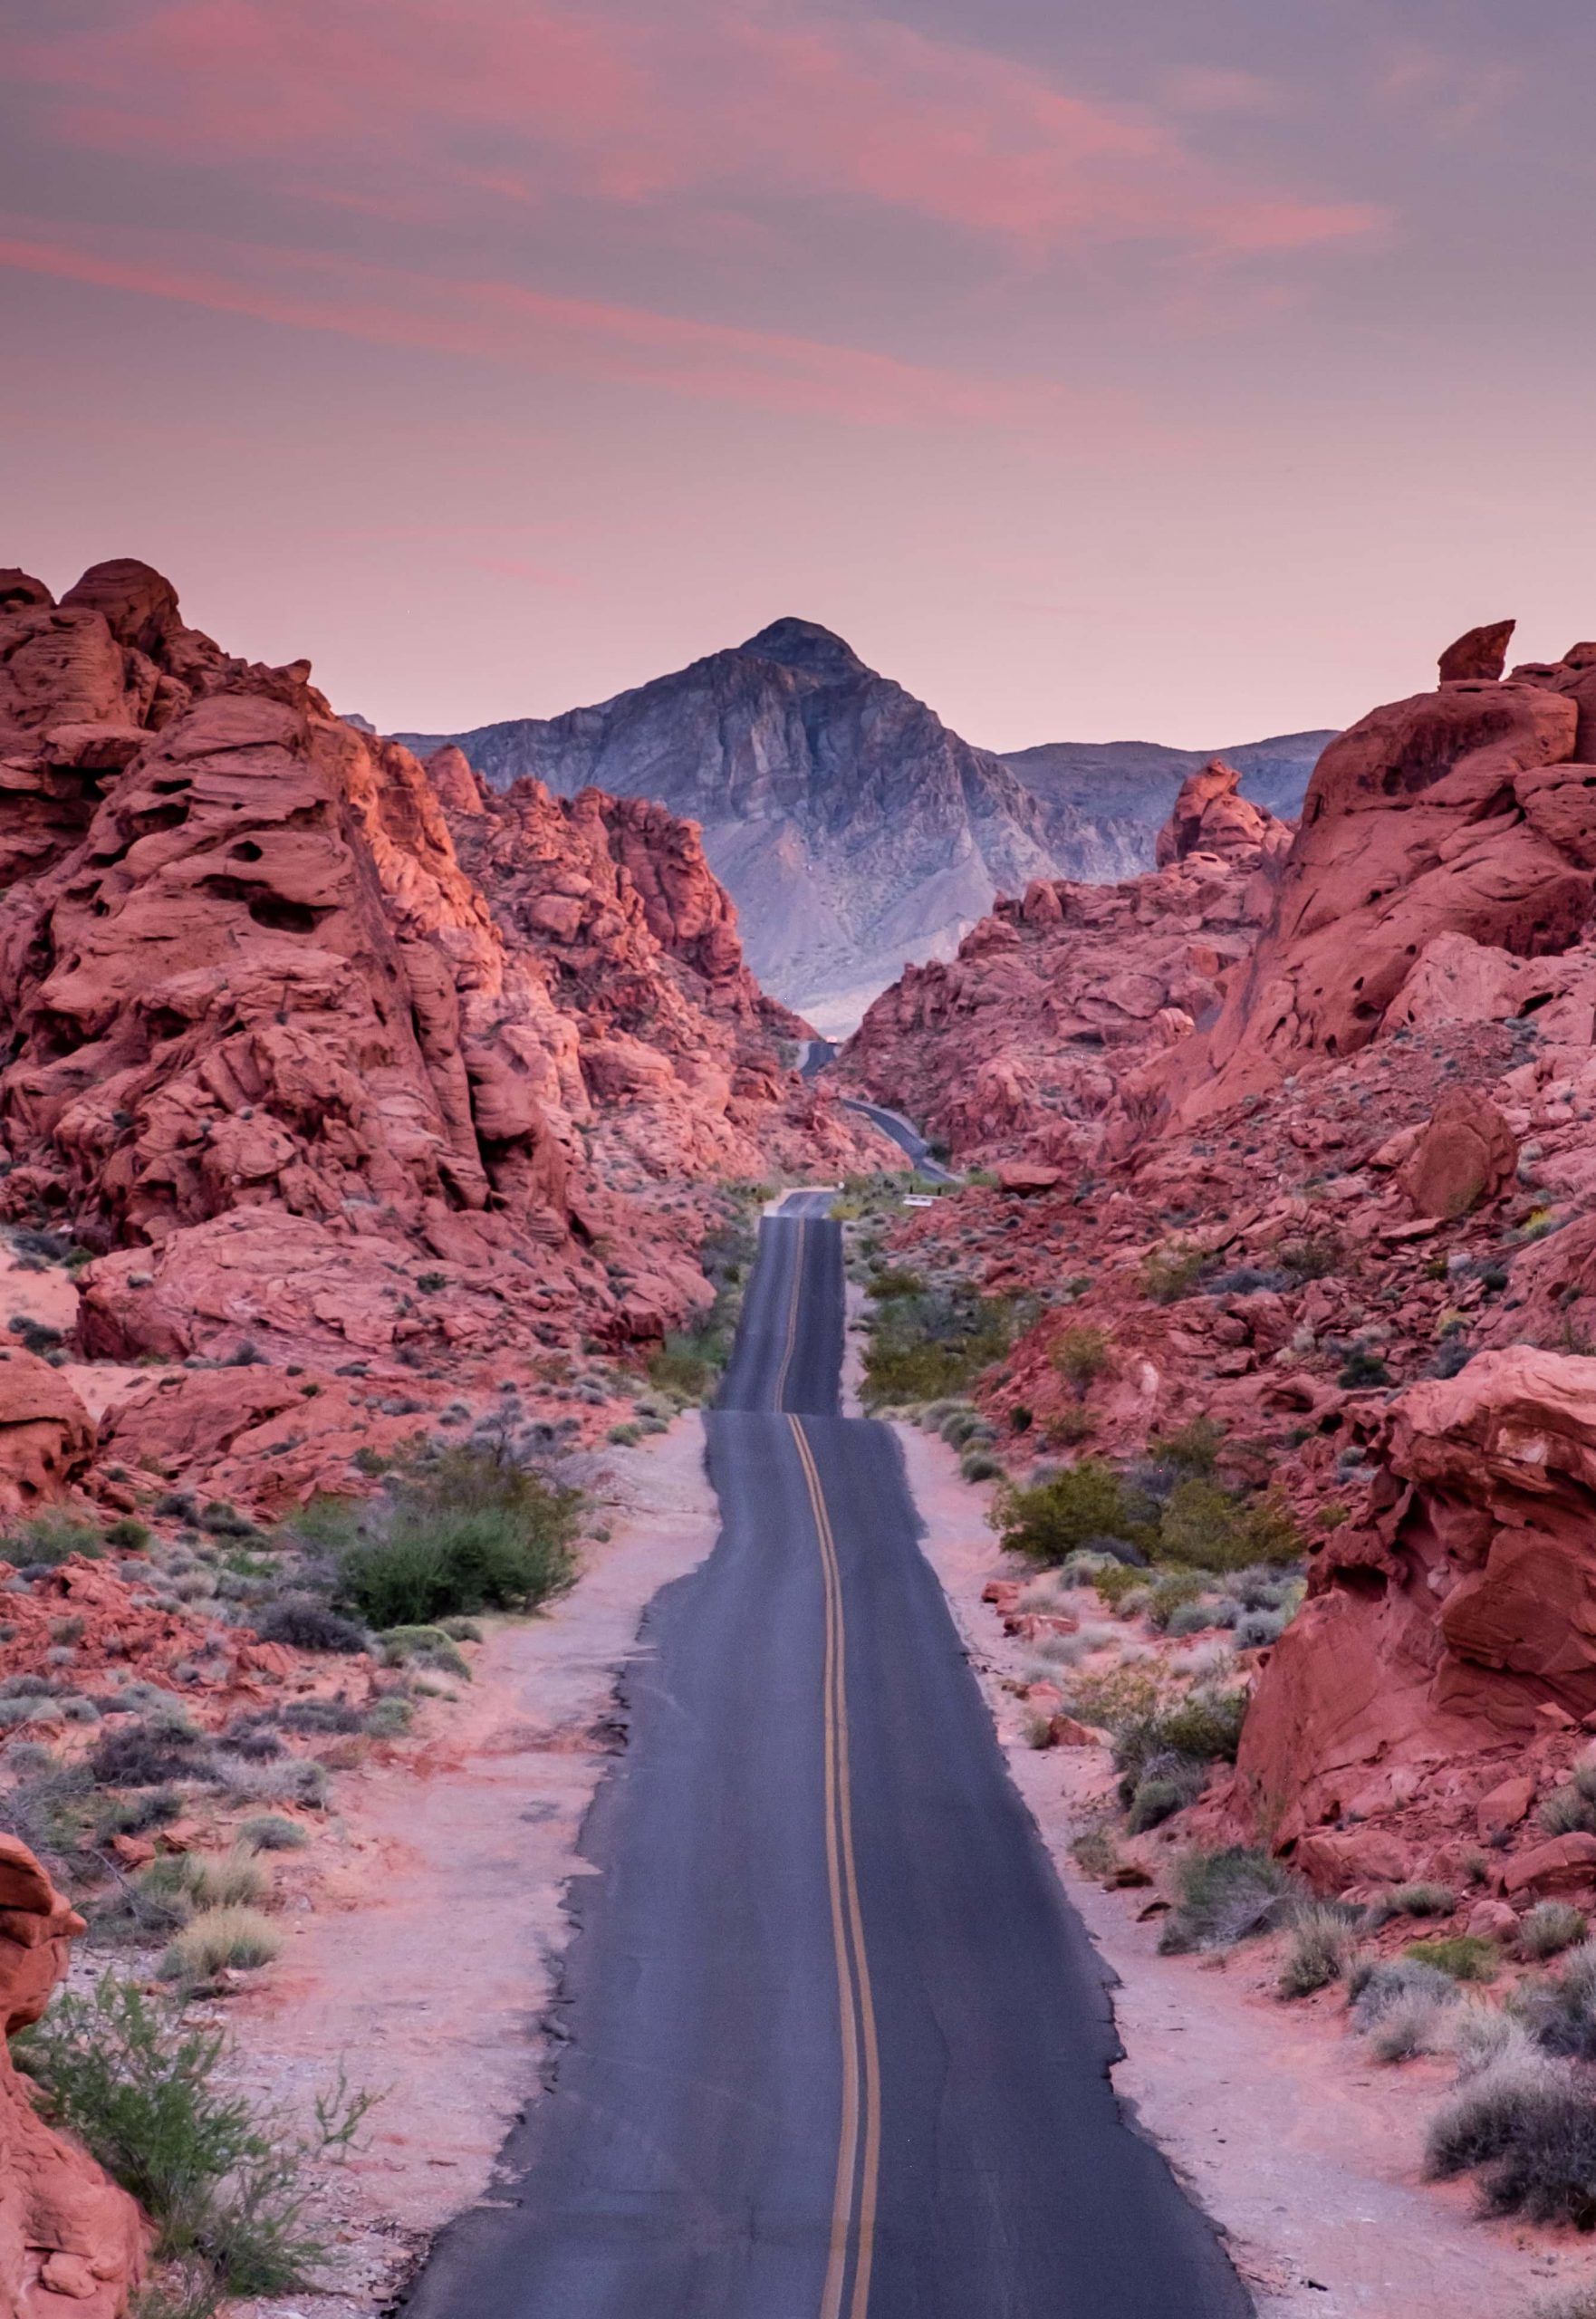 Nevada desert landscape